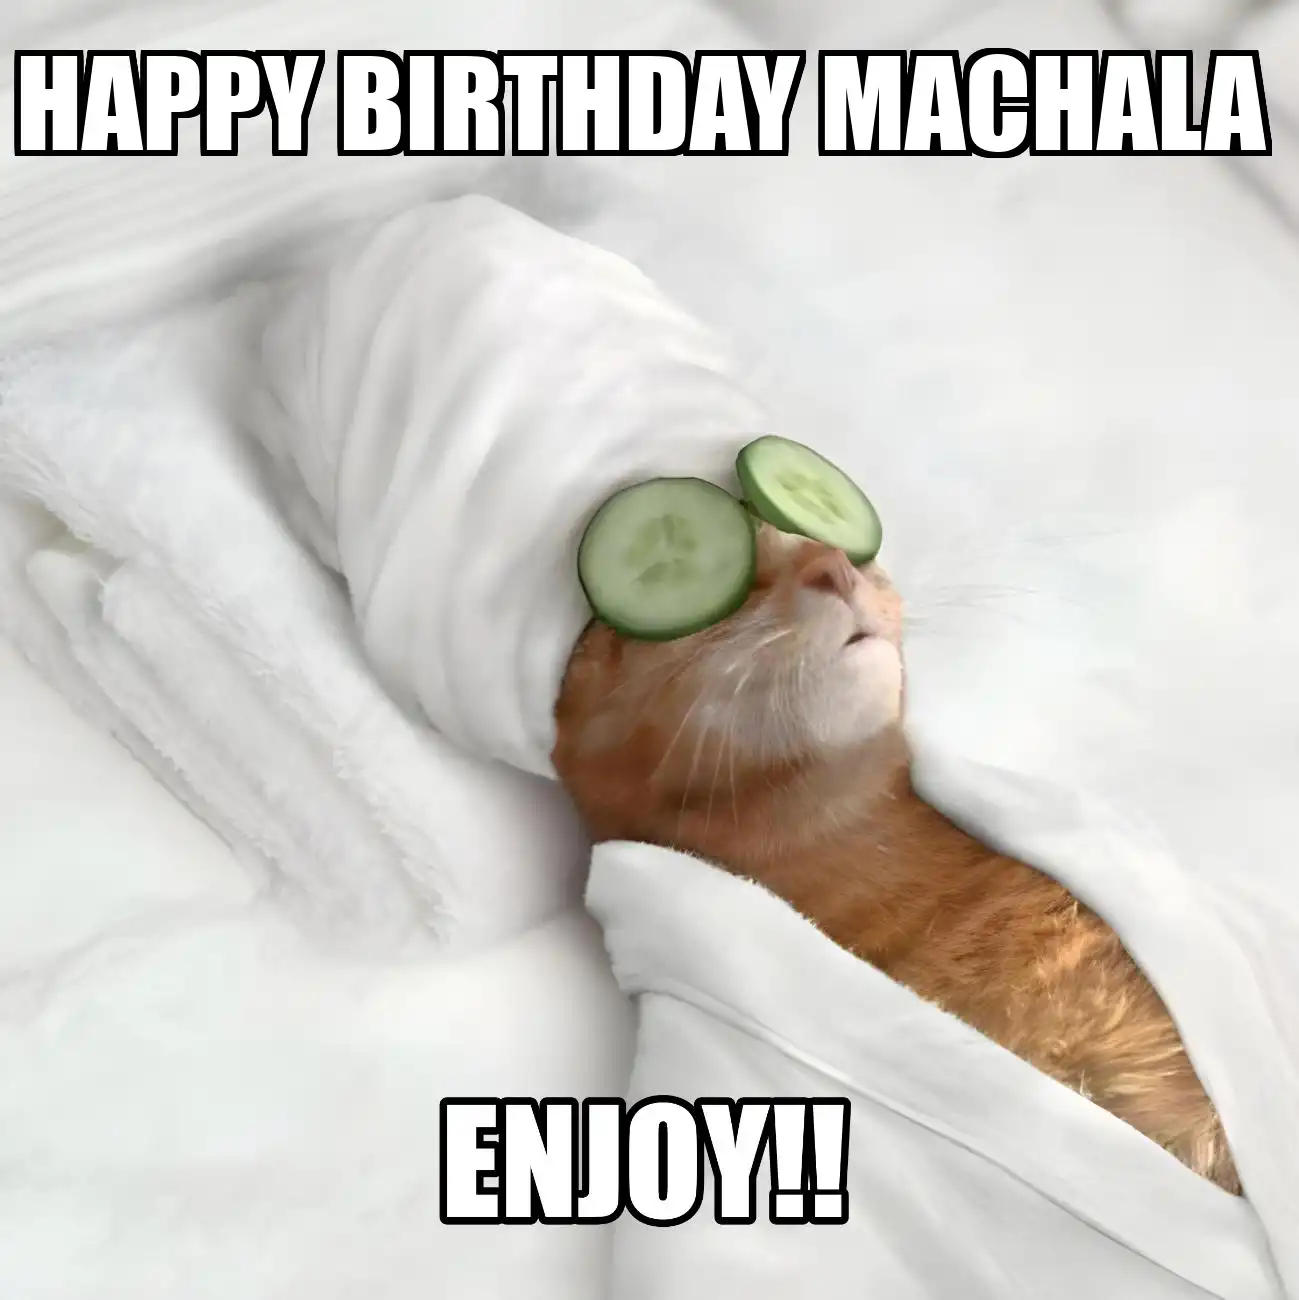 Happy Birthday Machala Enjoy Cat Meme